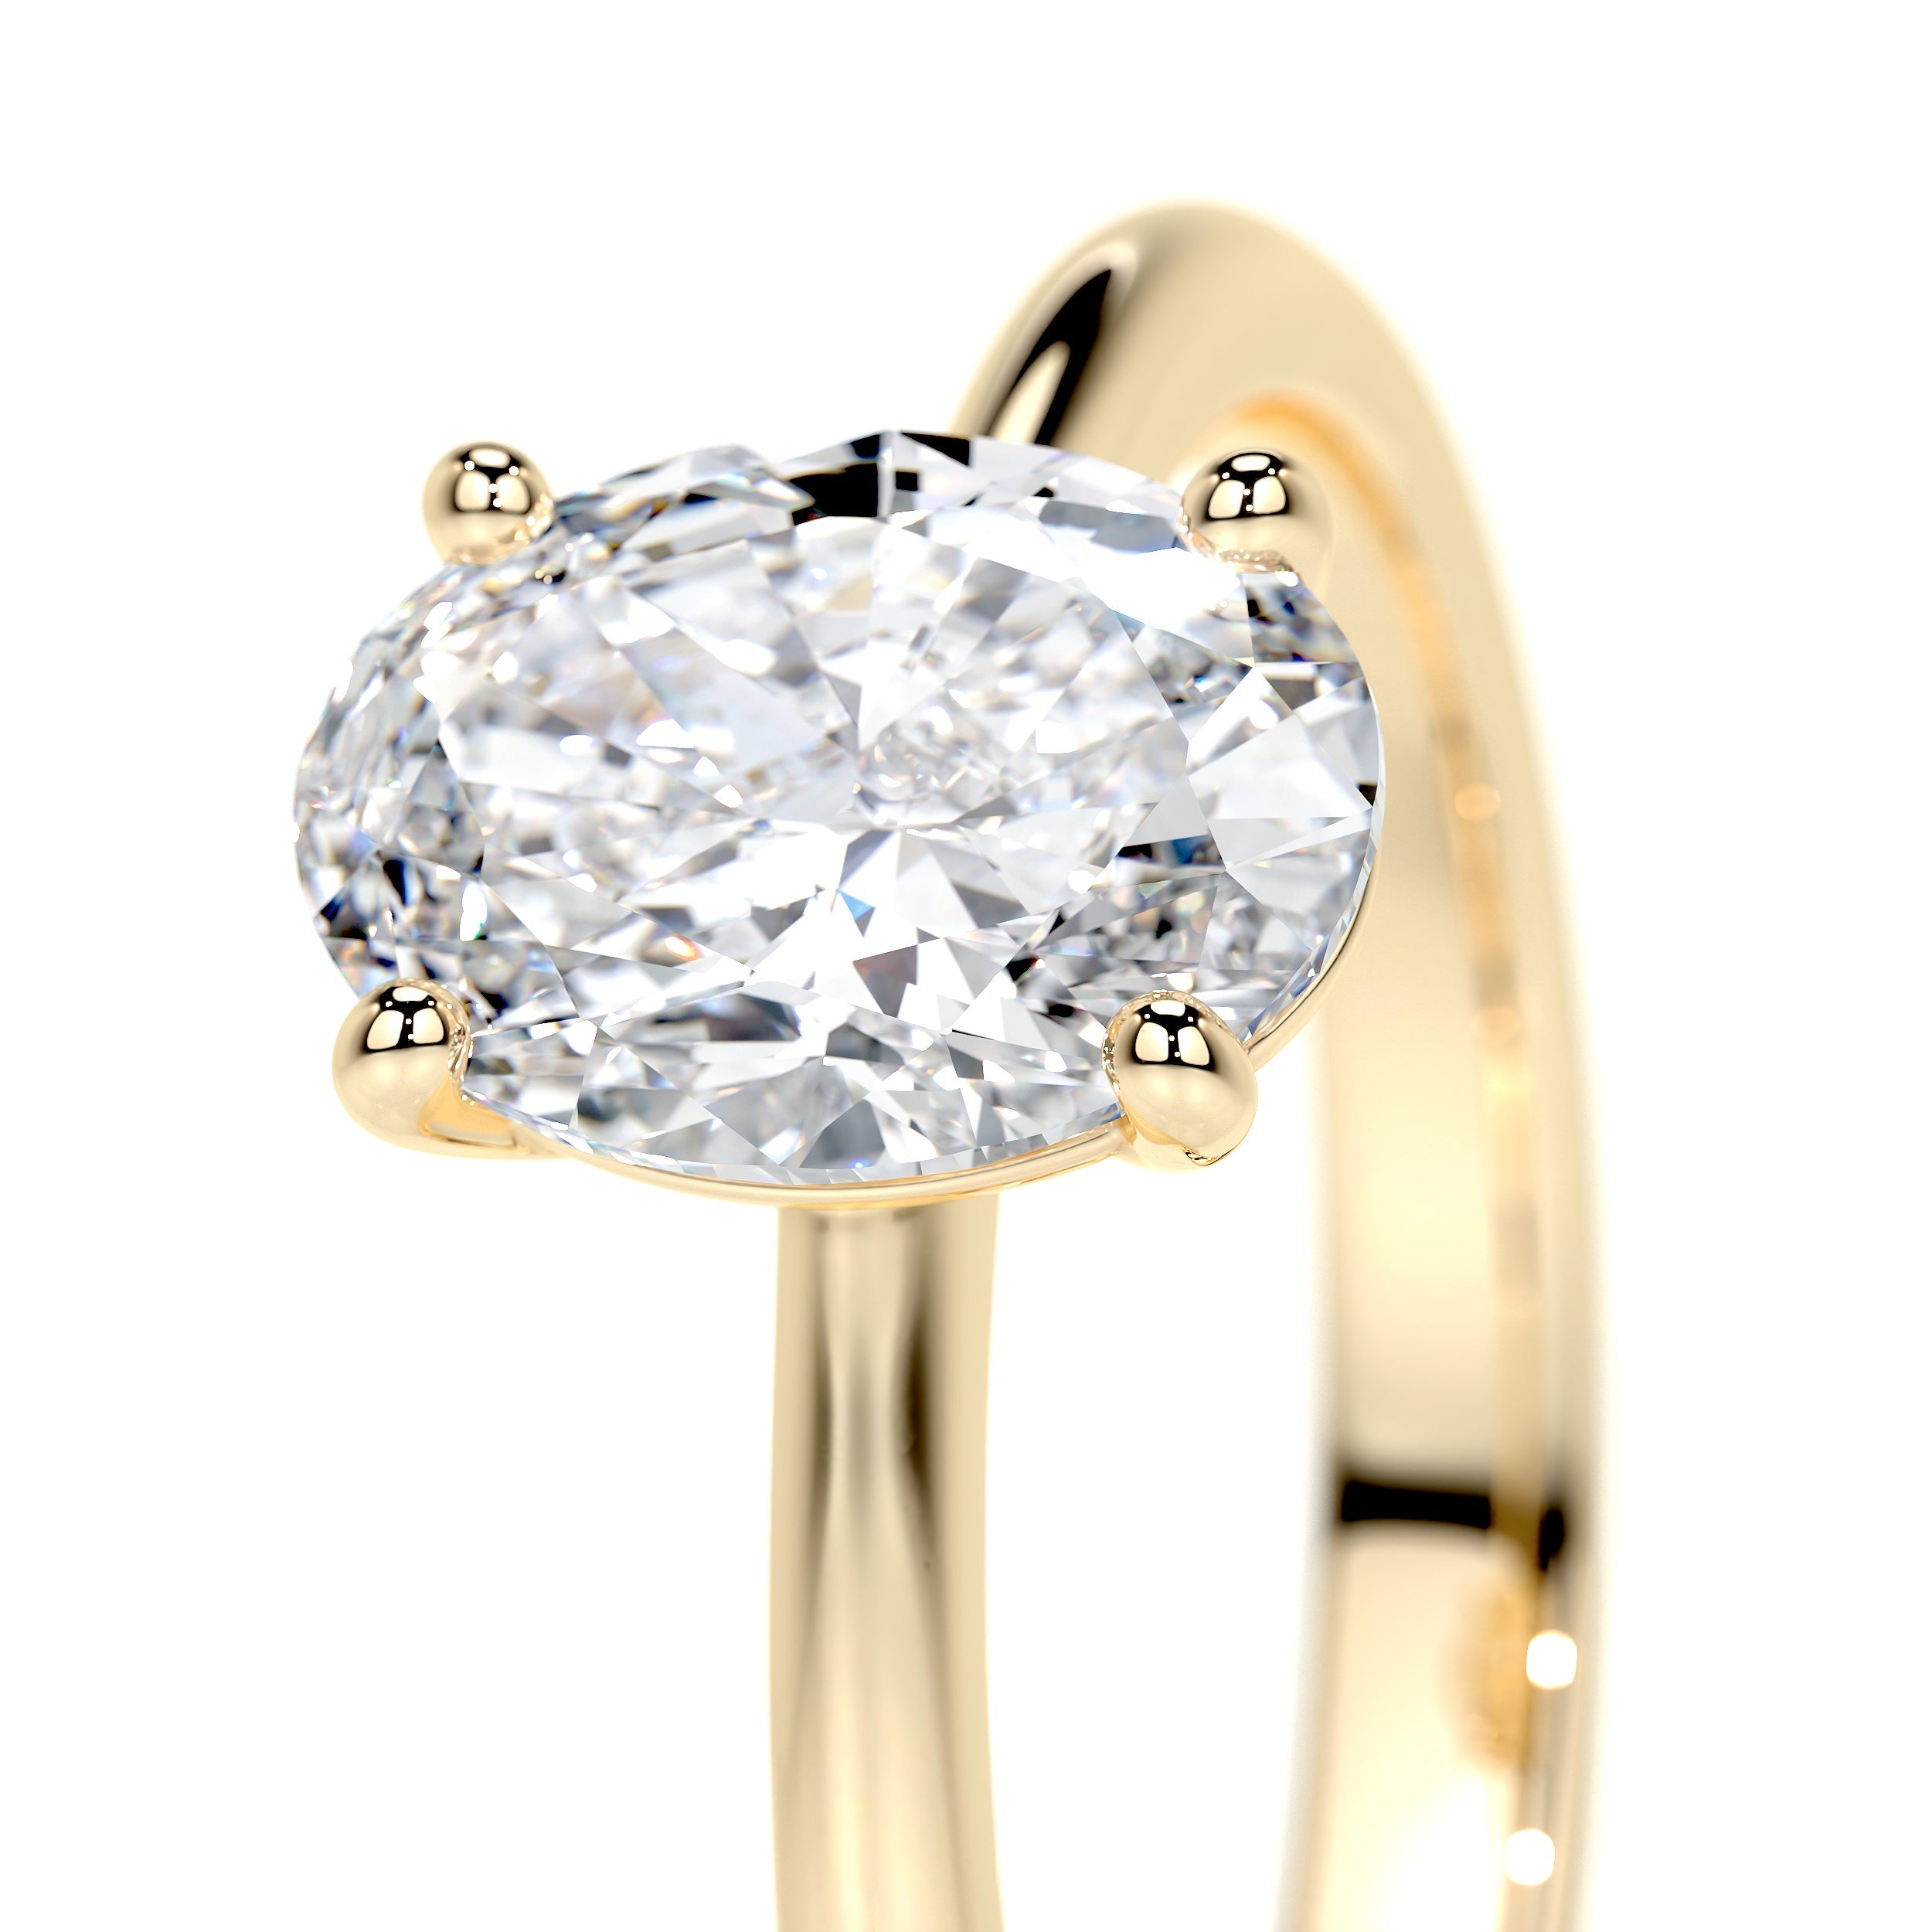 Julia Lab Grown Diamond Ring   (1 Carat) -18K Yellow Gold